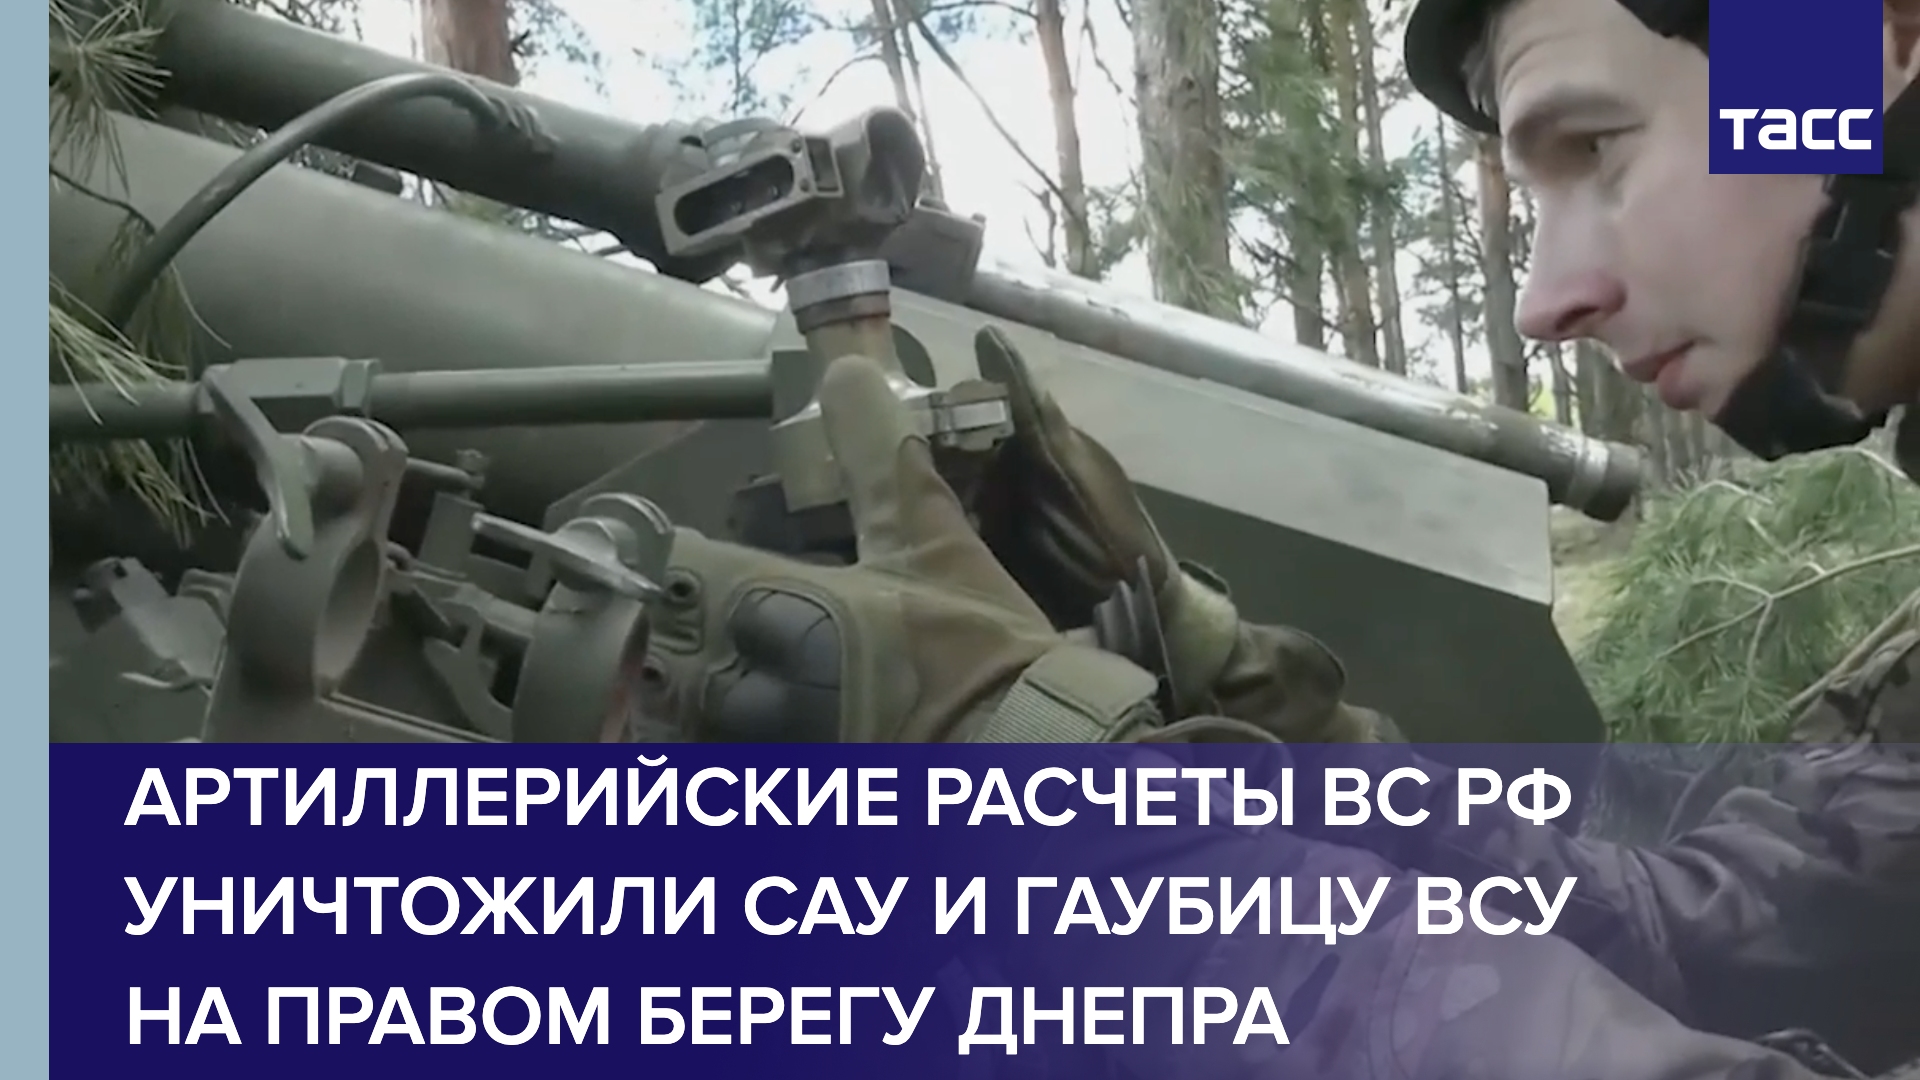 Артиллерийские расчеты ВС РФ уничтожили САУ и гаубицу ВСУ на правом берегу Днепра